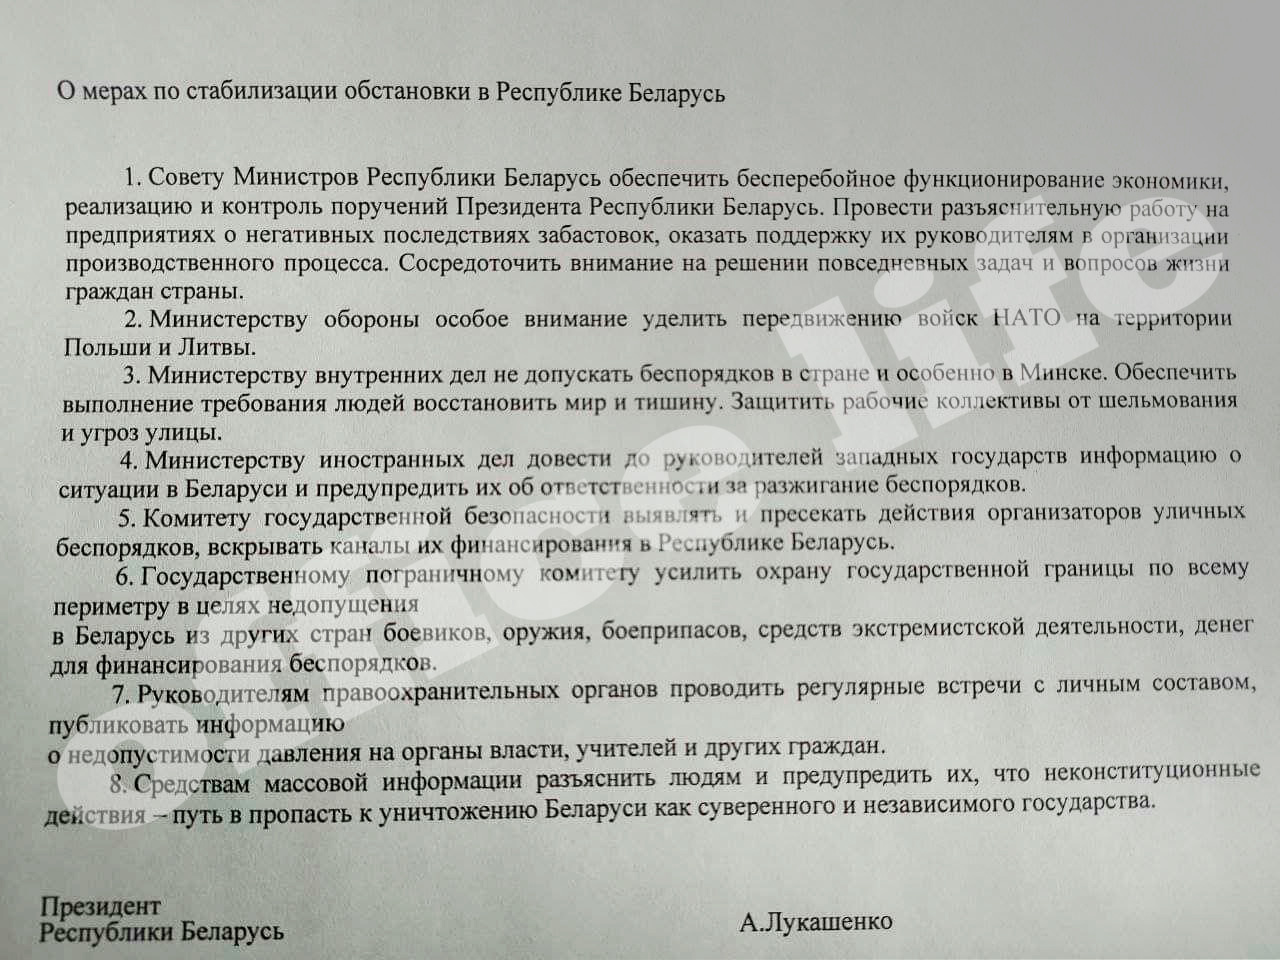 Постановление Совбеза о мерах по стабилизации обстановки в Беларуси — документ